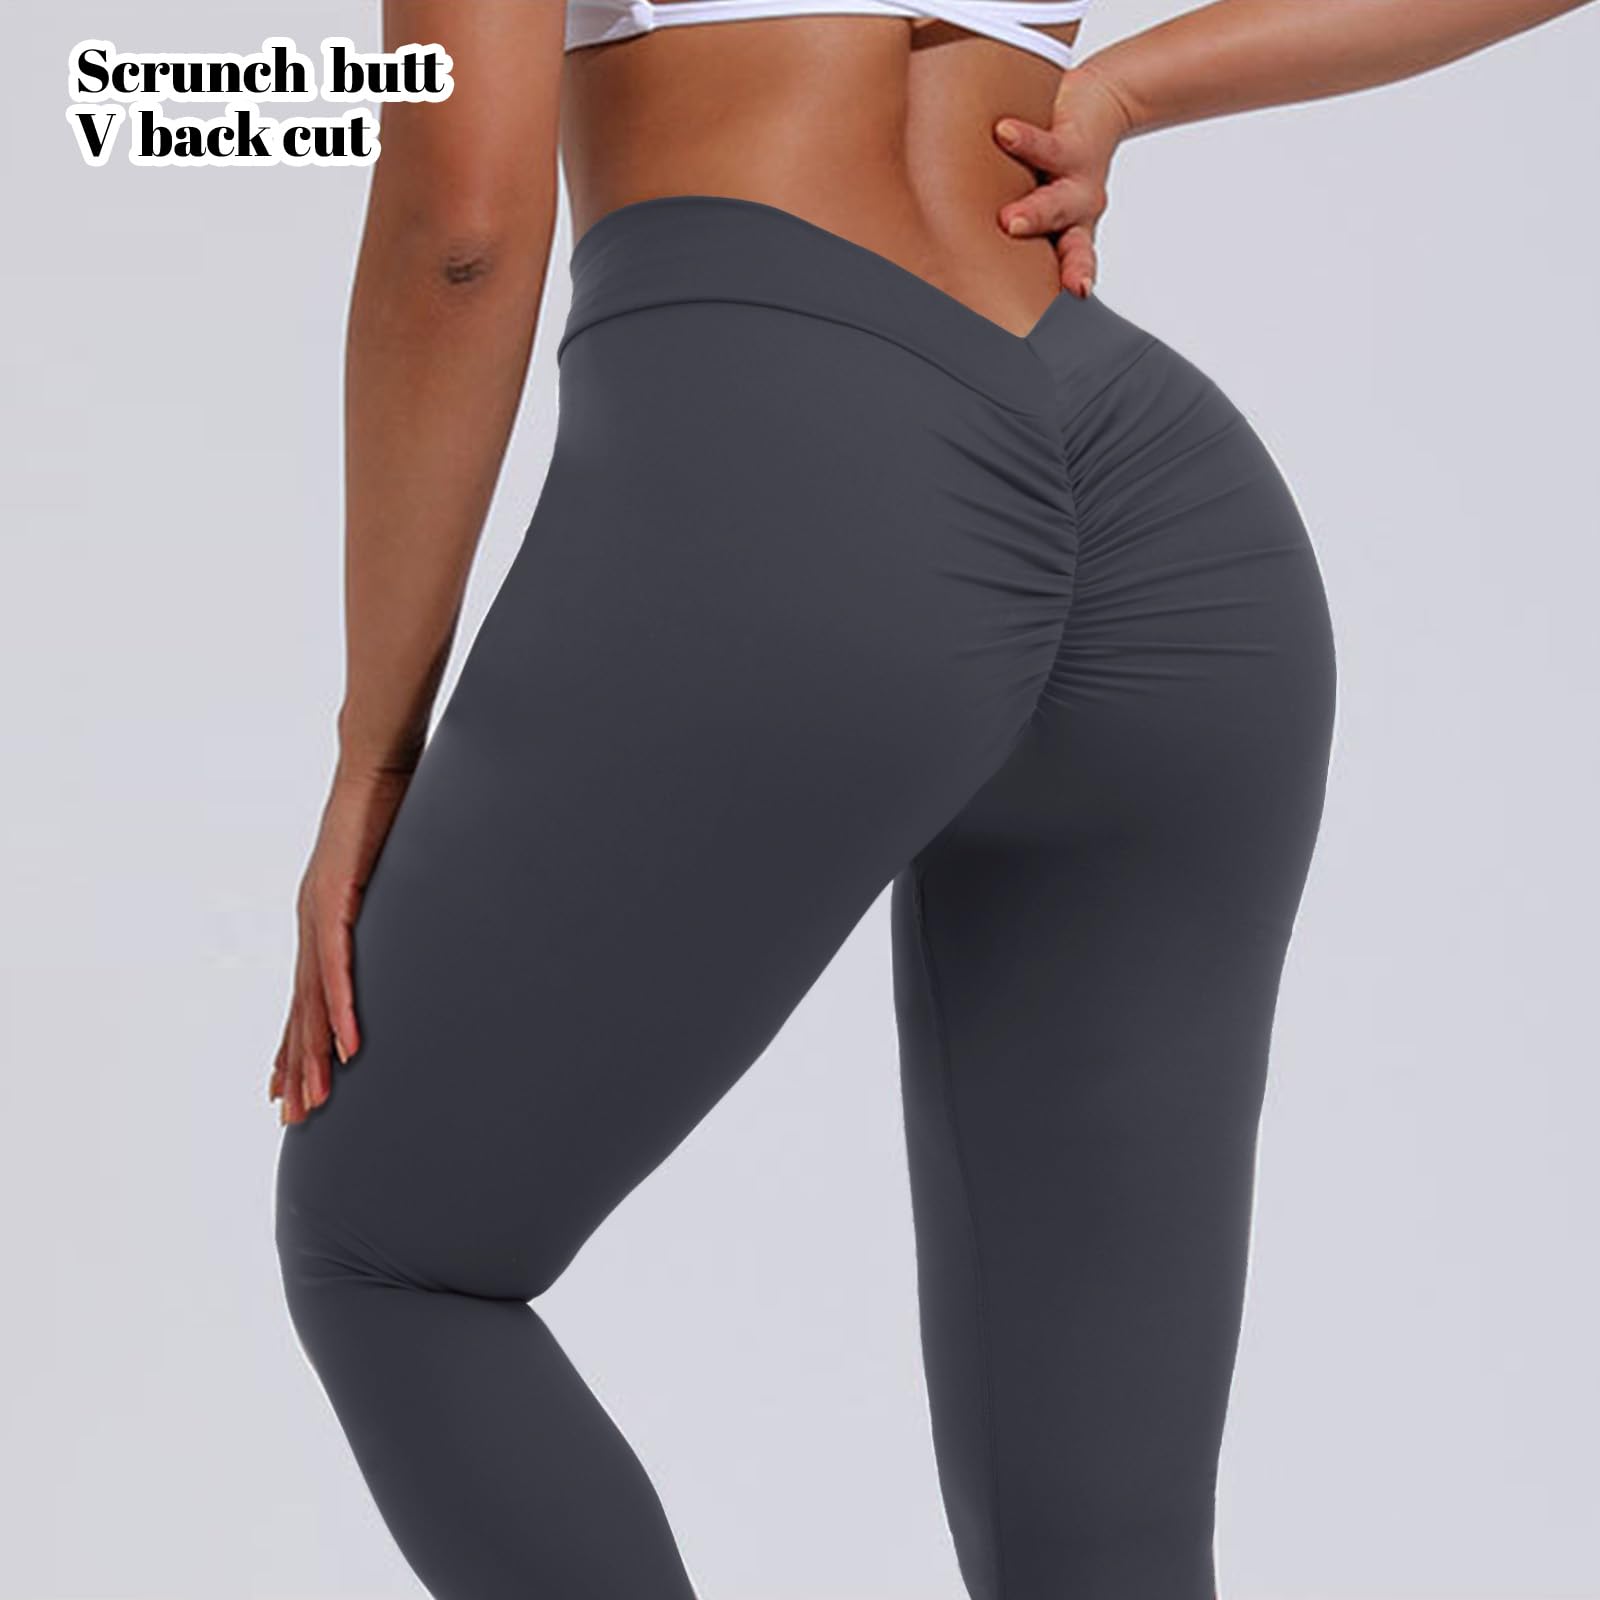 Scrunch Butt Workout Leggings, Scrunch Butt Leggings Pants